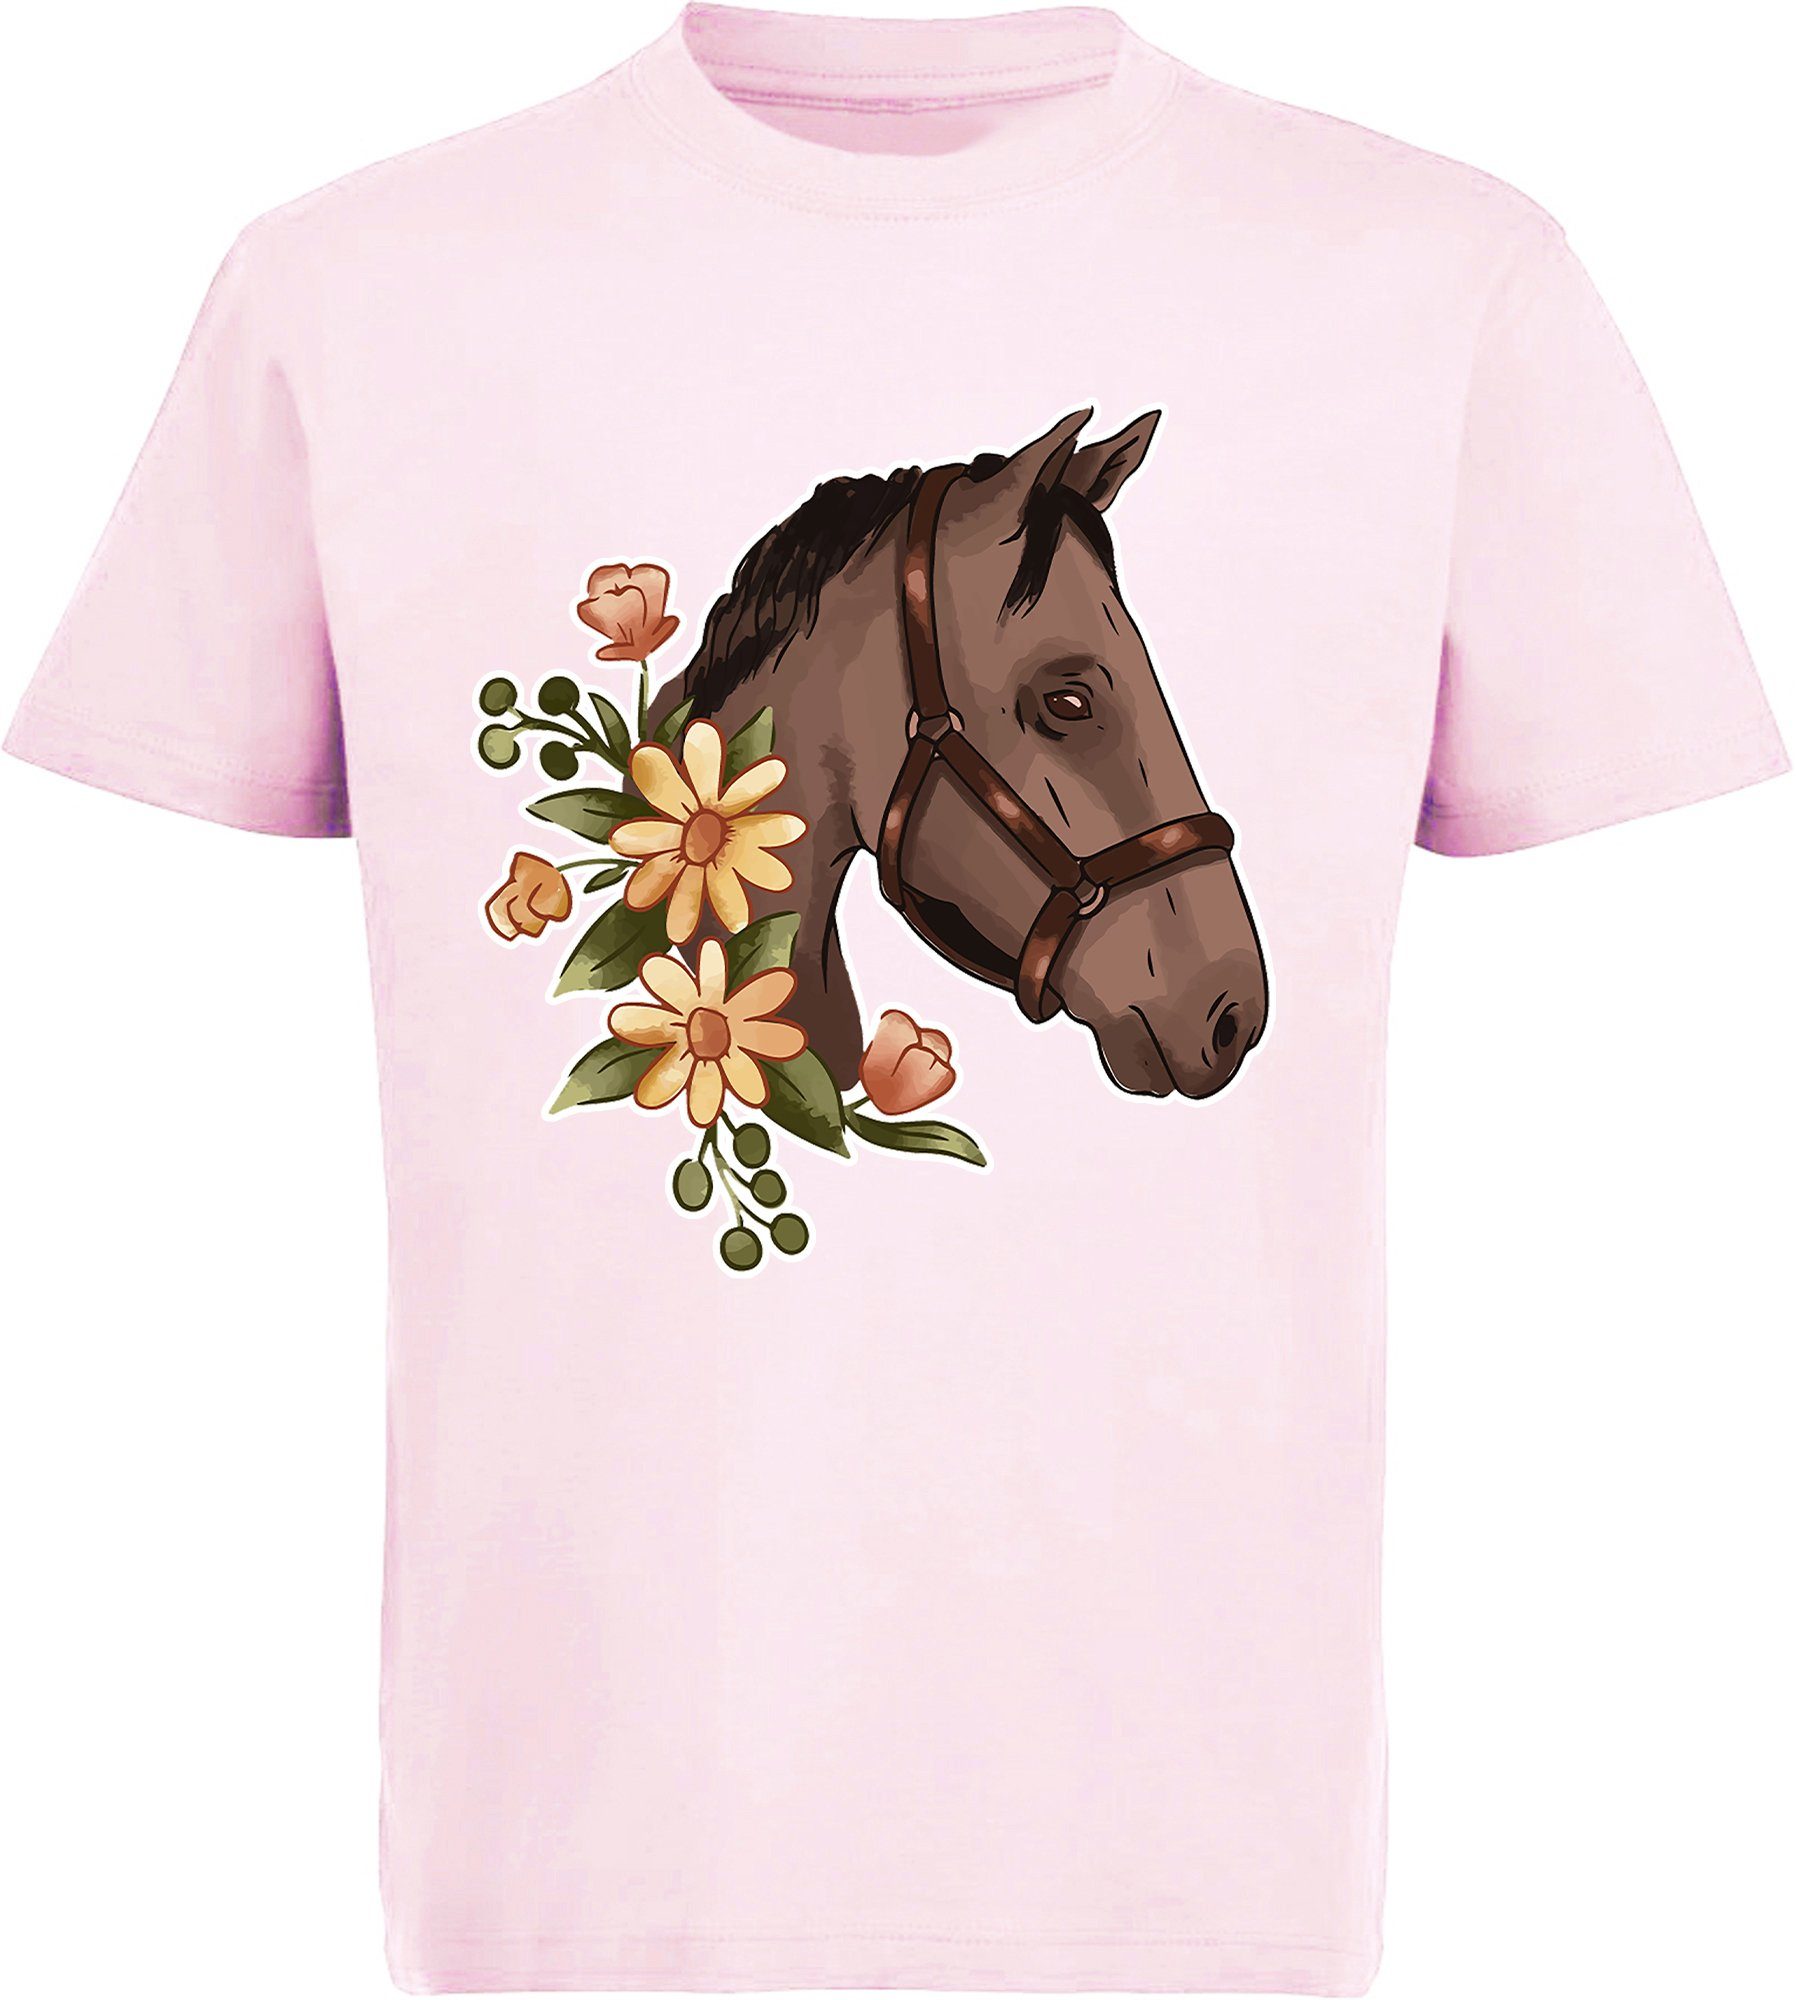 MyDesign24 Print-Shirt bedrucktes Mädchen T-Shirt - Dunkelbrauner Pferdekopf mit Blumen Baumwollshirt mit Aufdruck, i180 rosa